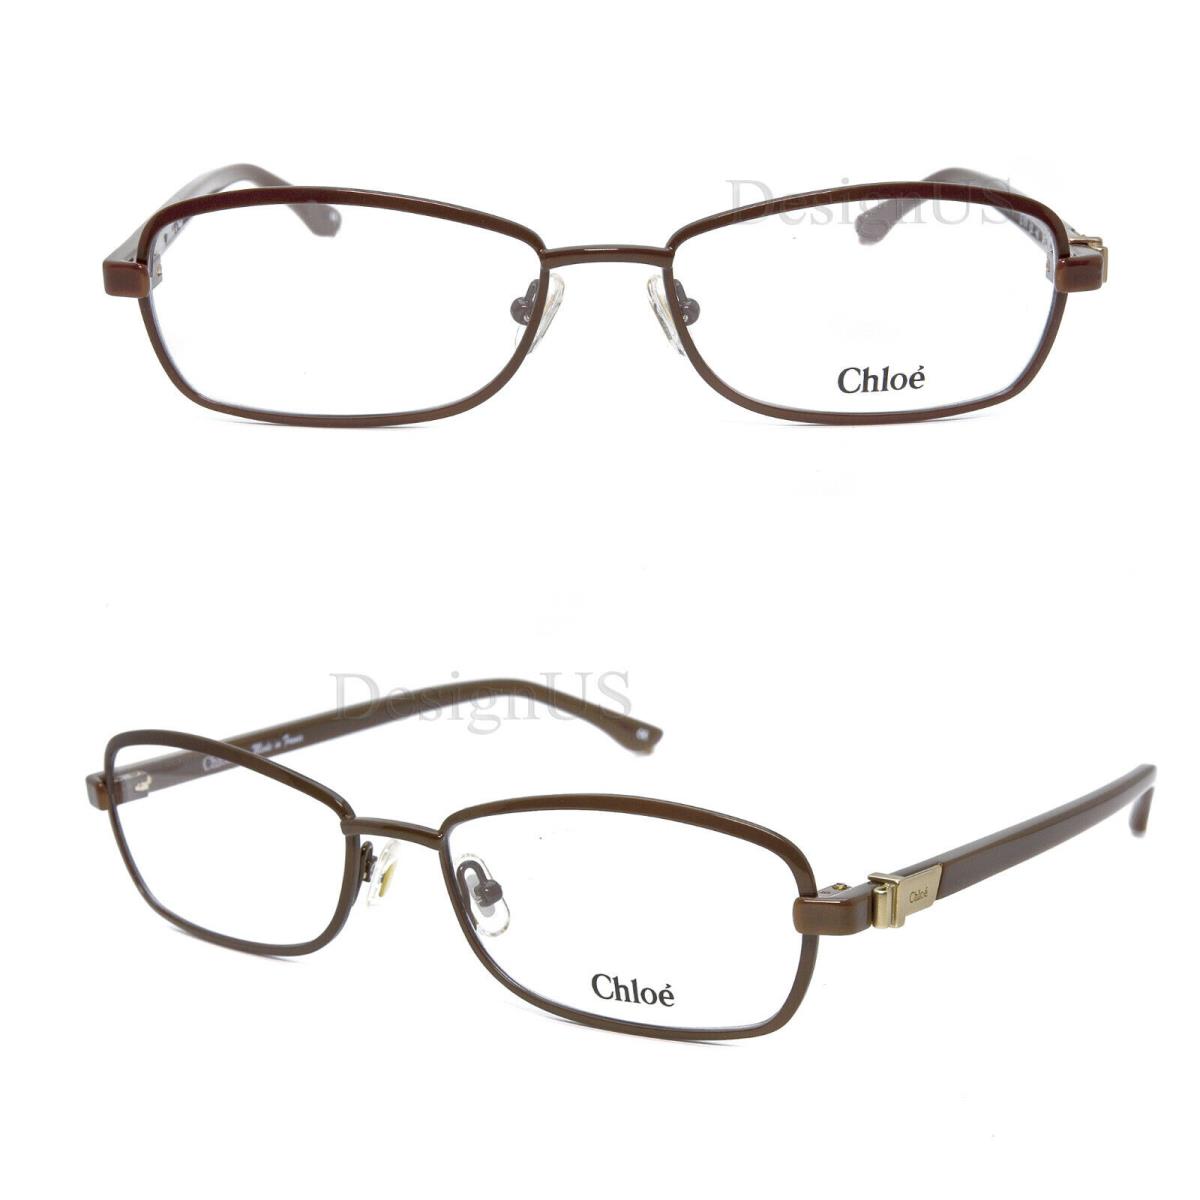 Chloe CL1214 C02 Brown 54/16/140 Eyeglasses Made in France - Frame: C02 (Brown)